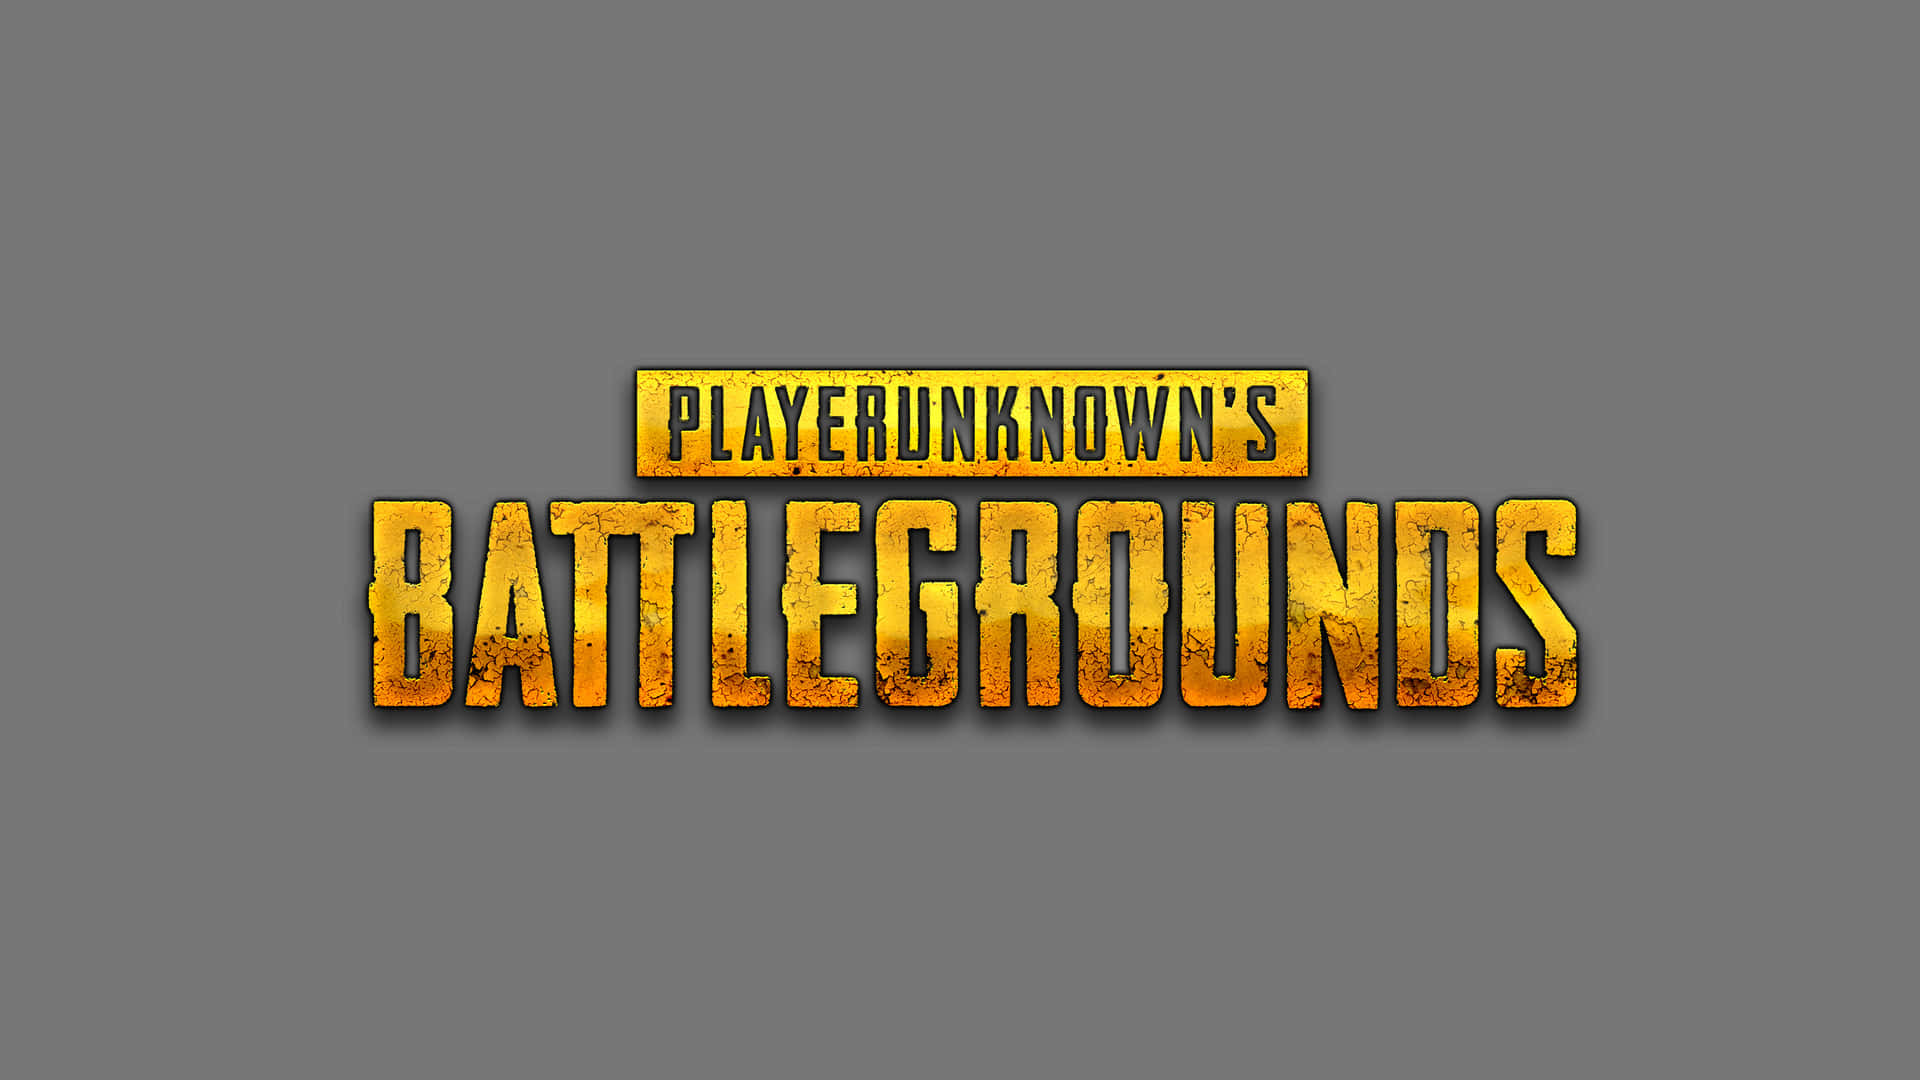 Logotypenför Playknowledge Battlefields Wallpaper